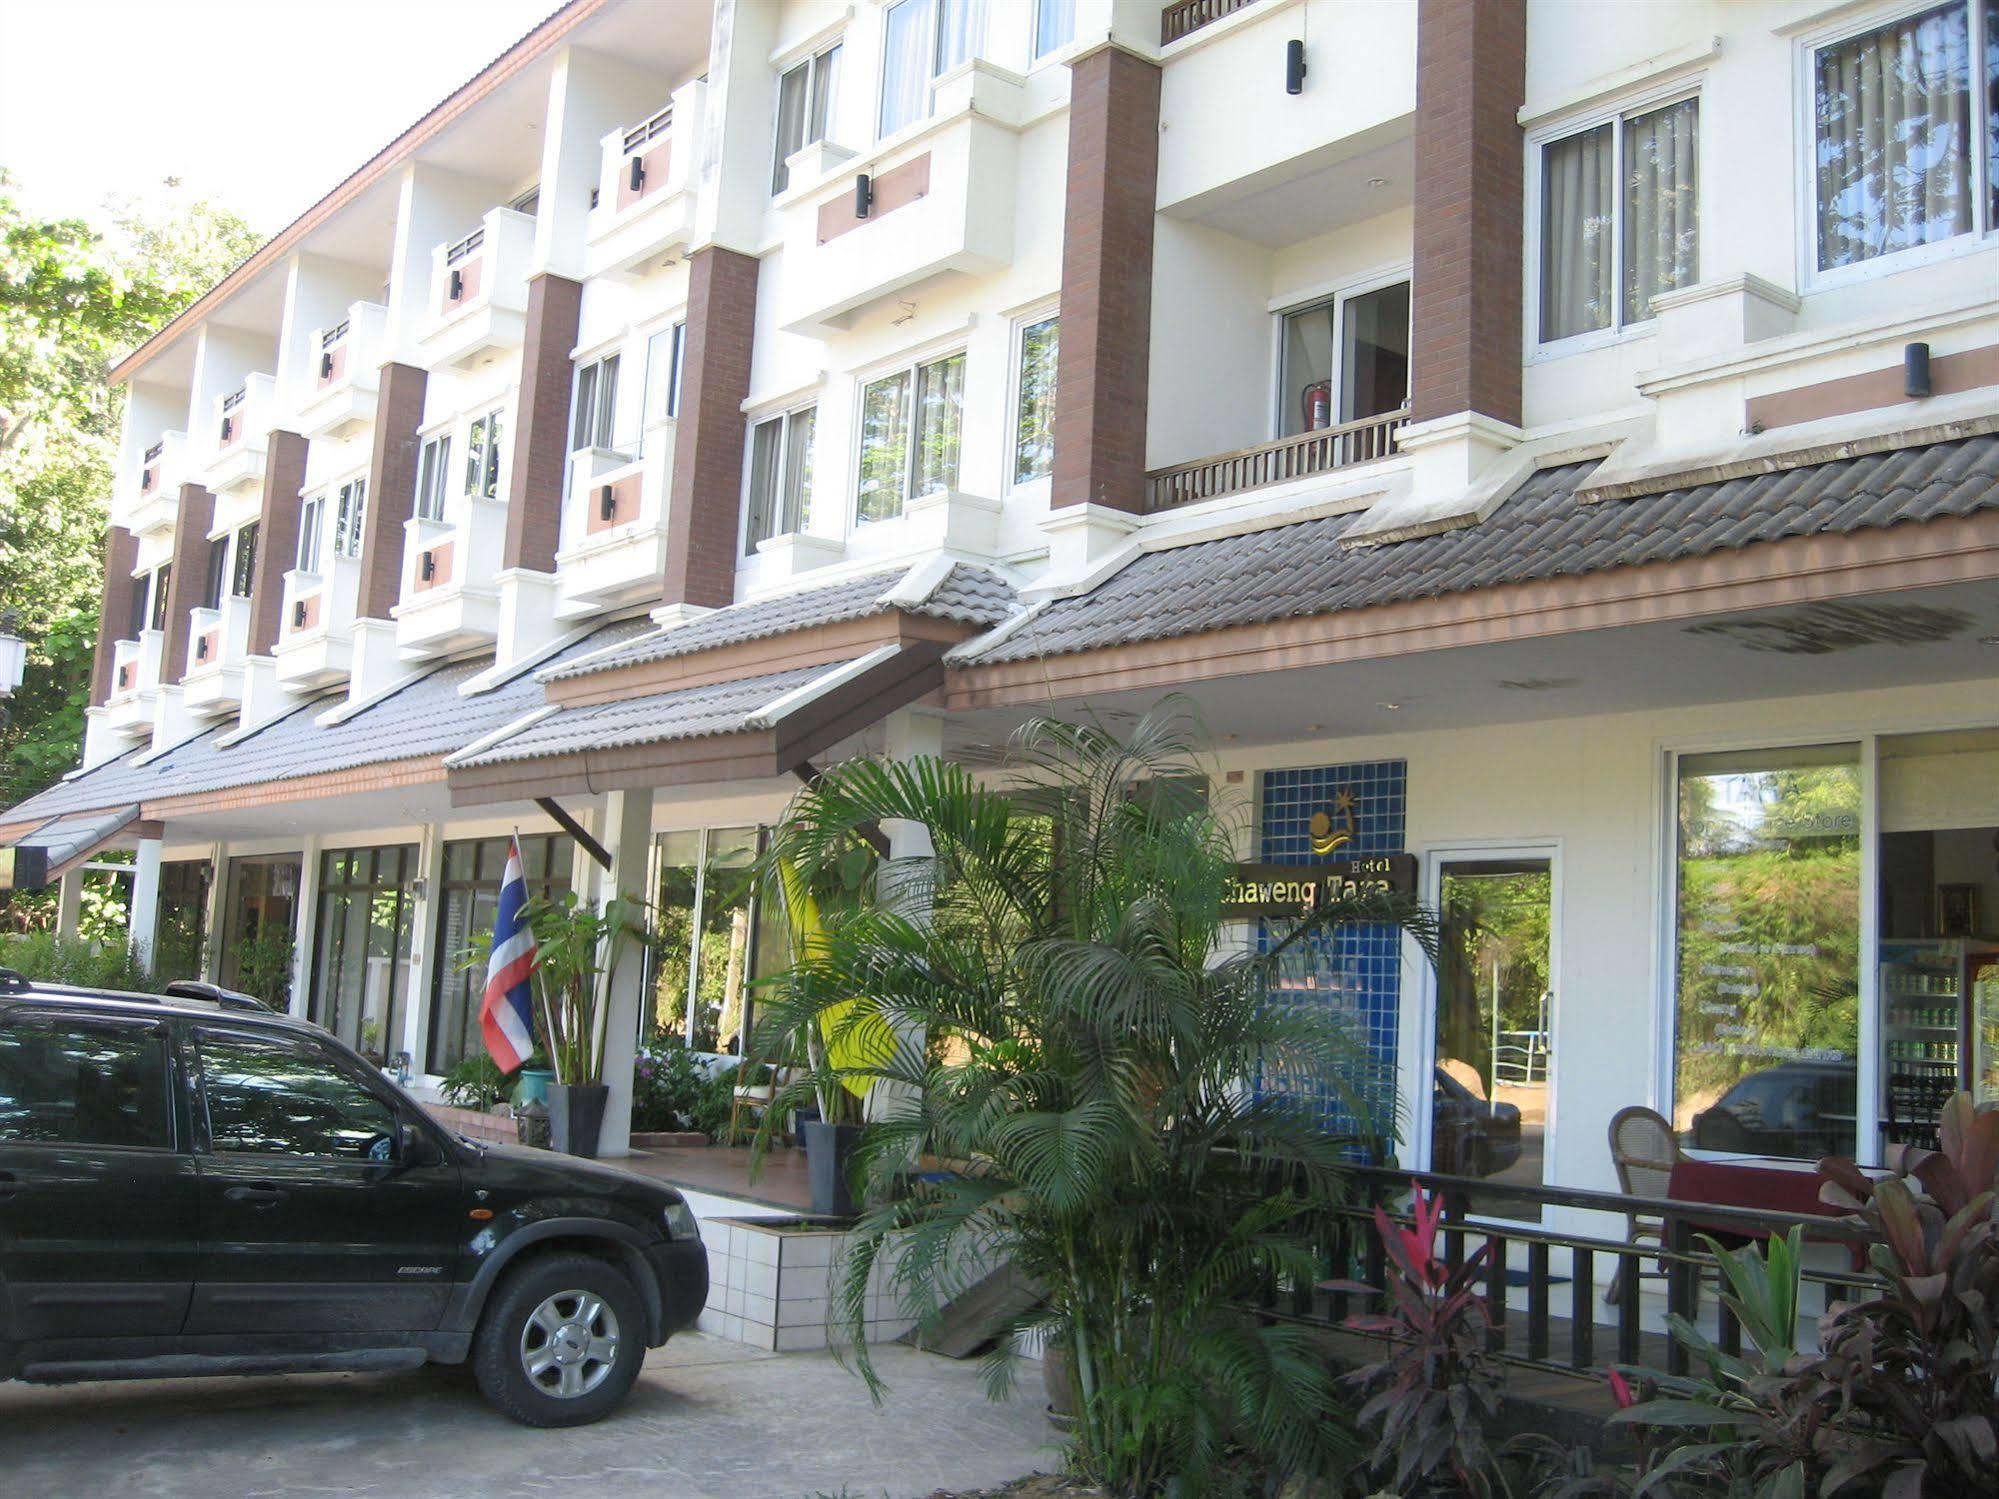 Chaweng Tara Hotel Exterior photo